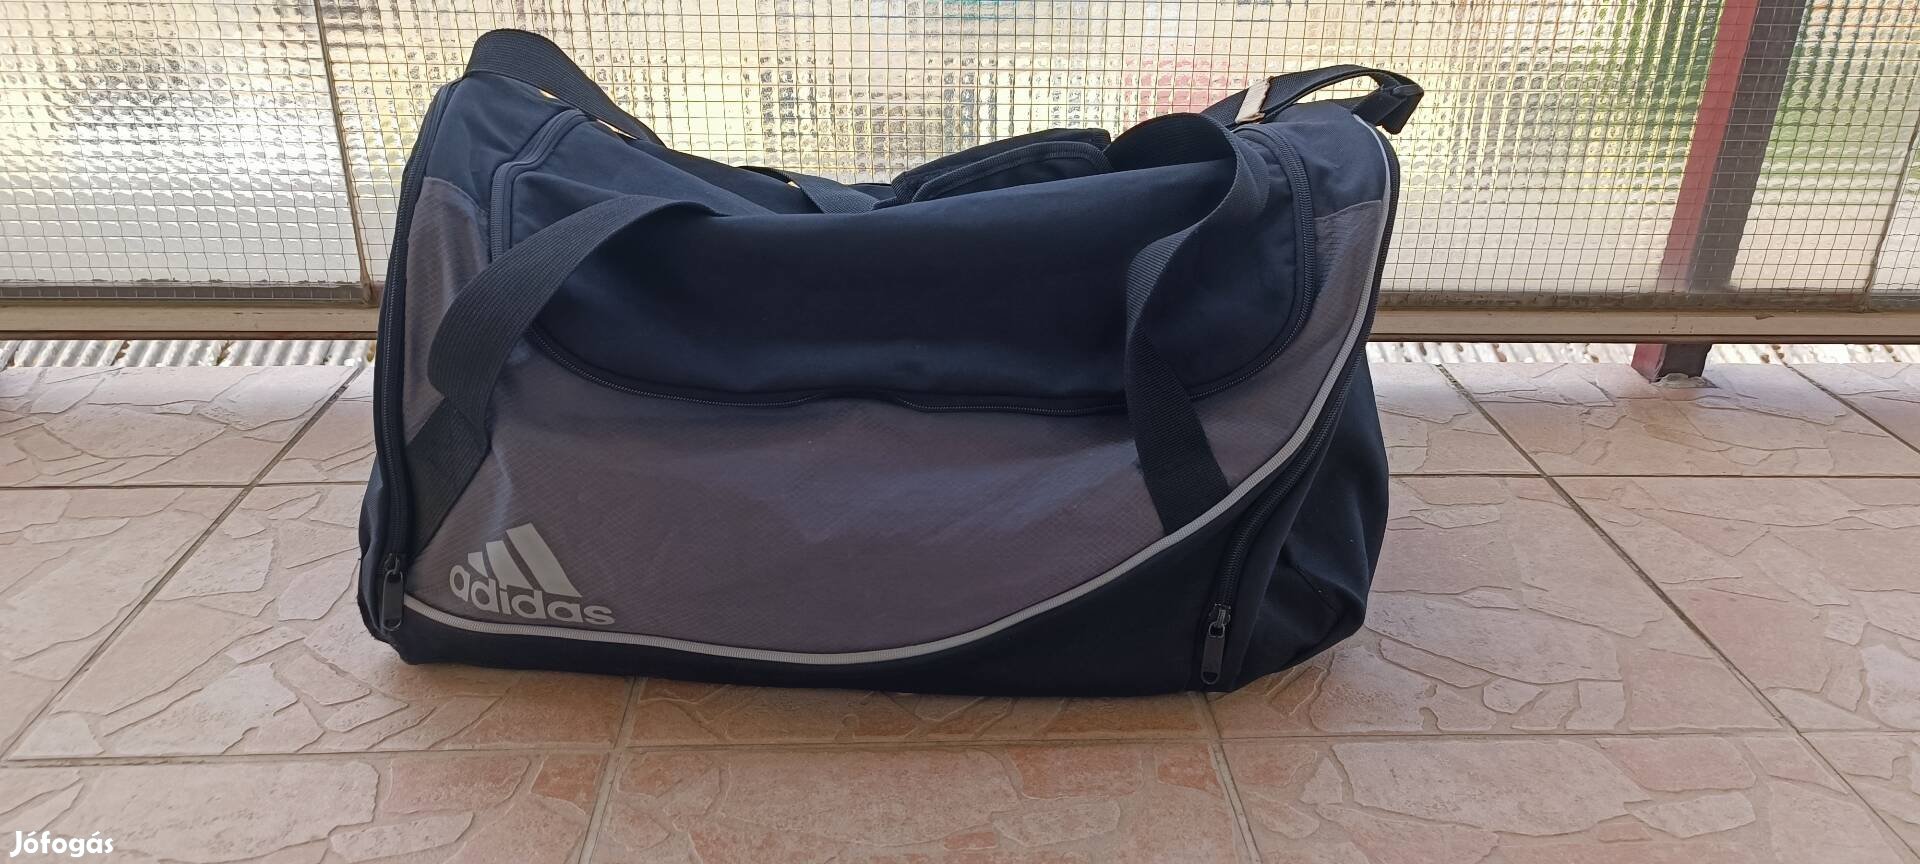 Adidas edzős táska utazó táska 